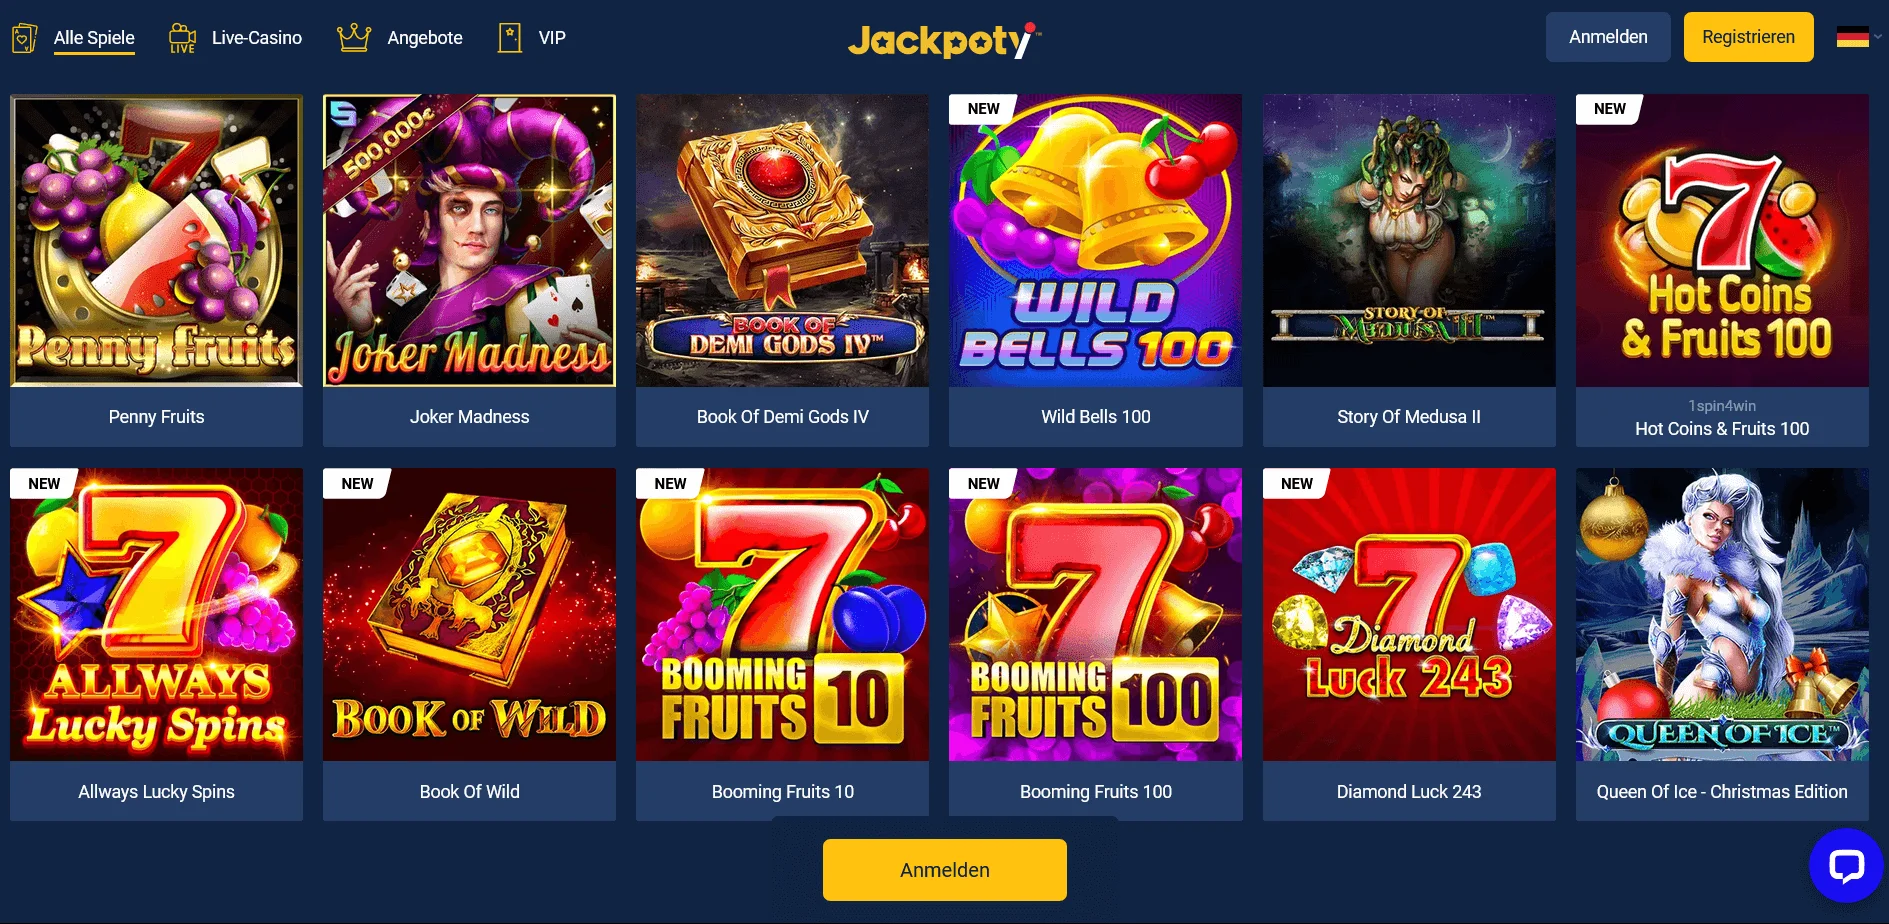 Registrierungsbedingungen und beliebte Spiele bei Jackpoty Casino